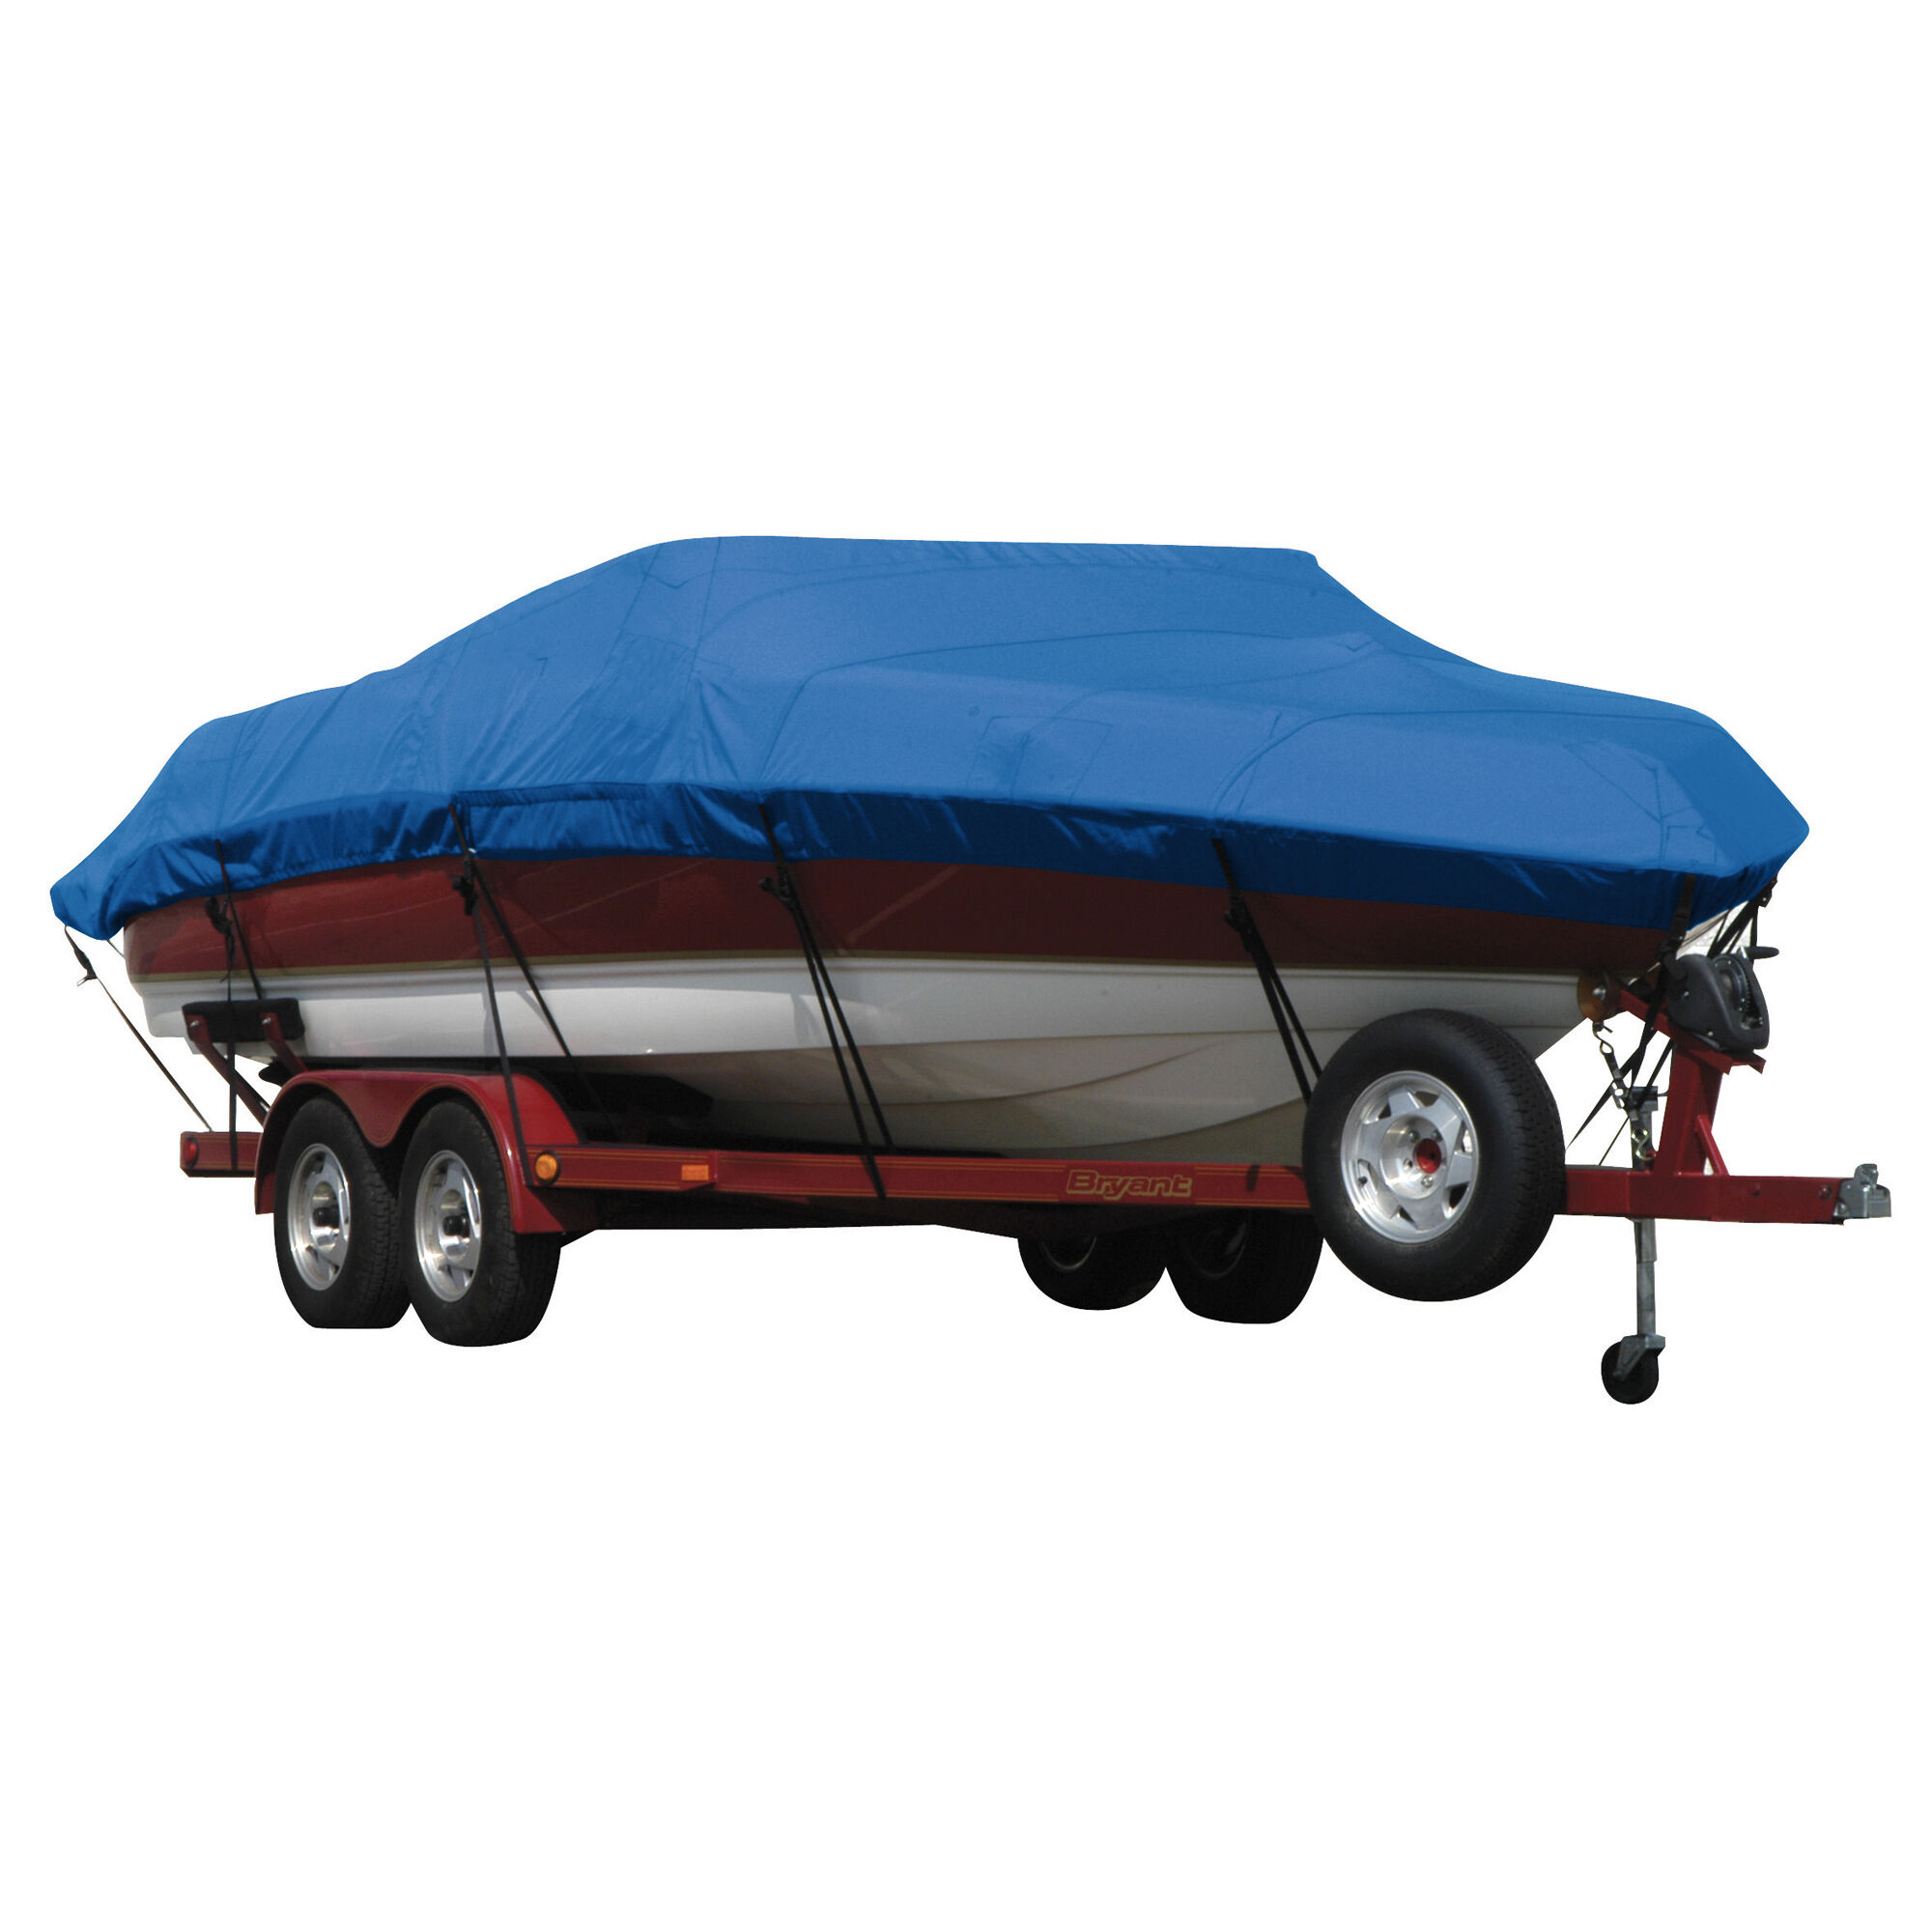 Covermate Exact Fit Sunbrella Boat Cover for Seaswirl Striper 2120 Striper 2120 Cuddy Hard Top No Pulpit I/O. Pacific Blue